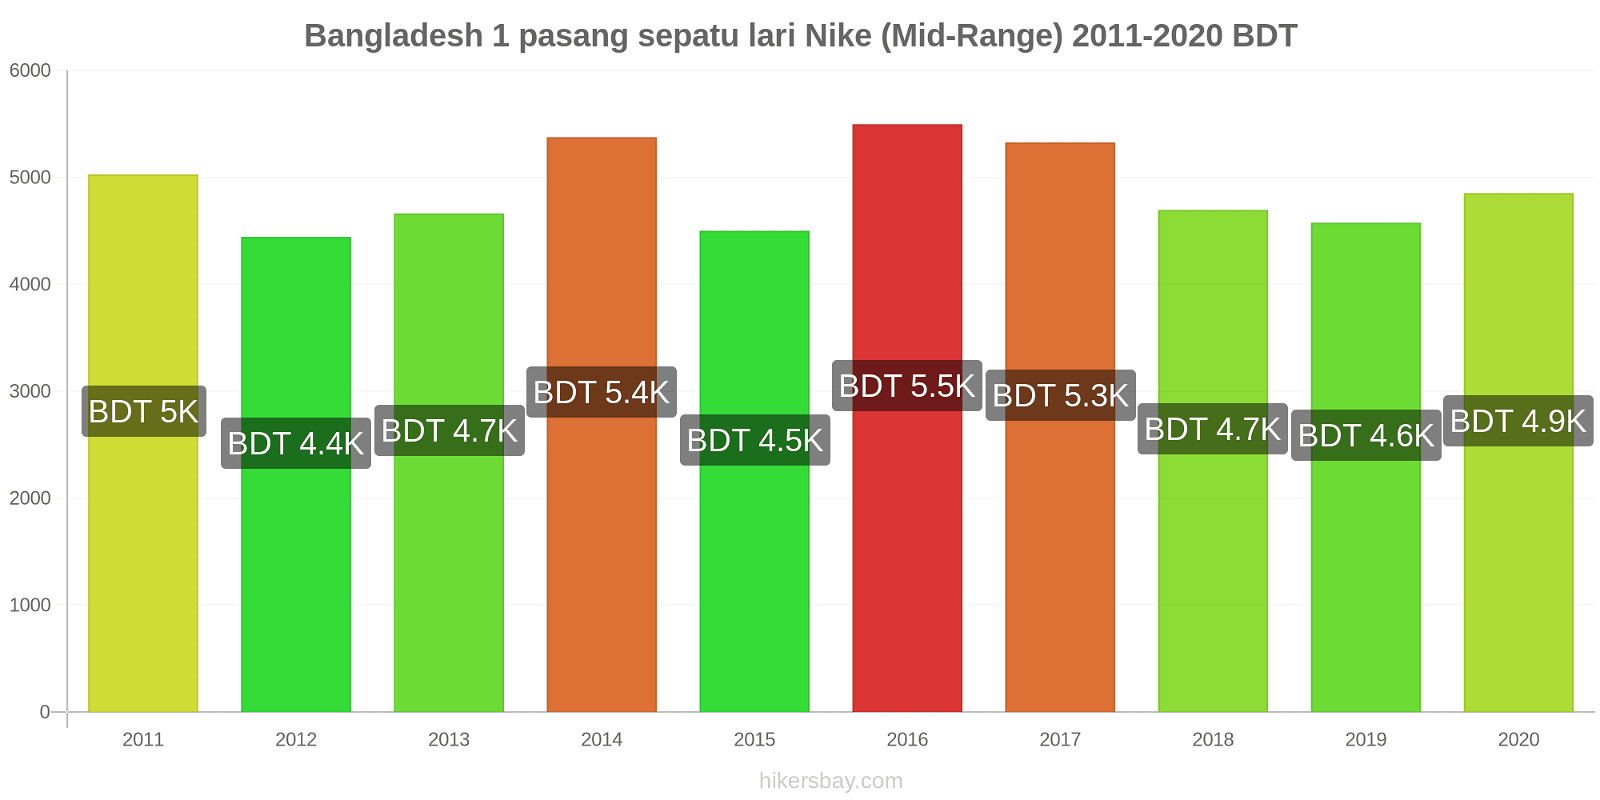 Bangladesh perubahan harga 1 pasang sepatu lari Nike (Mid-Range) hikersbay.com